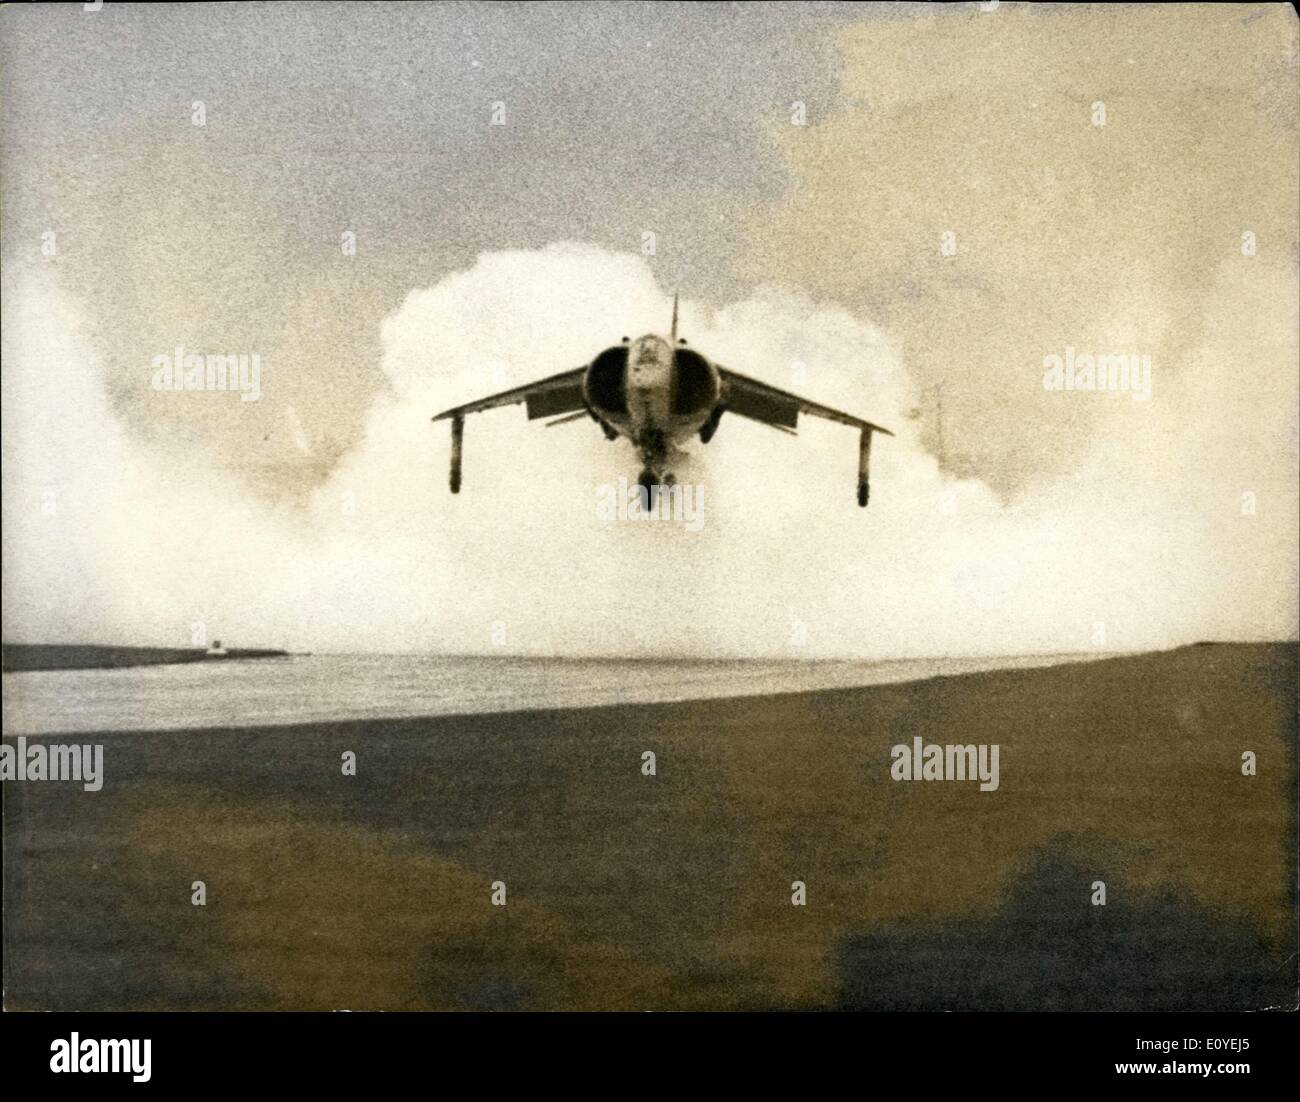 01 janv., 1970 - Démonstration de Harrier Jump Jet. La vaporisation de l'eau : La photo montre que la Royal Air Force nouveau Hawker Siddeley Harrier décollage vertical rose plan de grève au cours d'une manifestation à Hatfield, Herts, hier. Banque D'Images